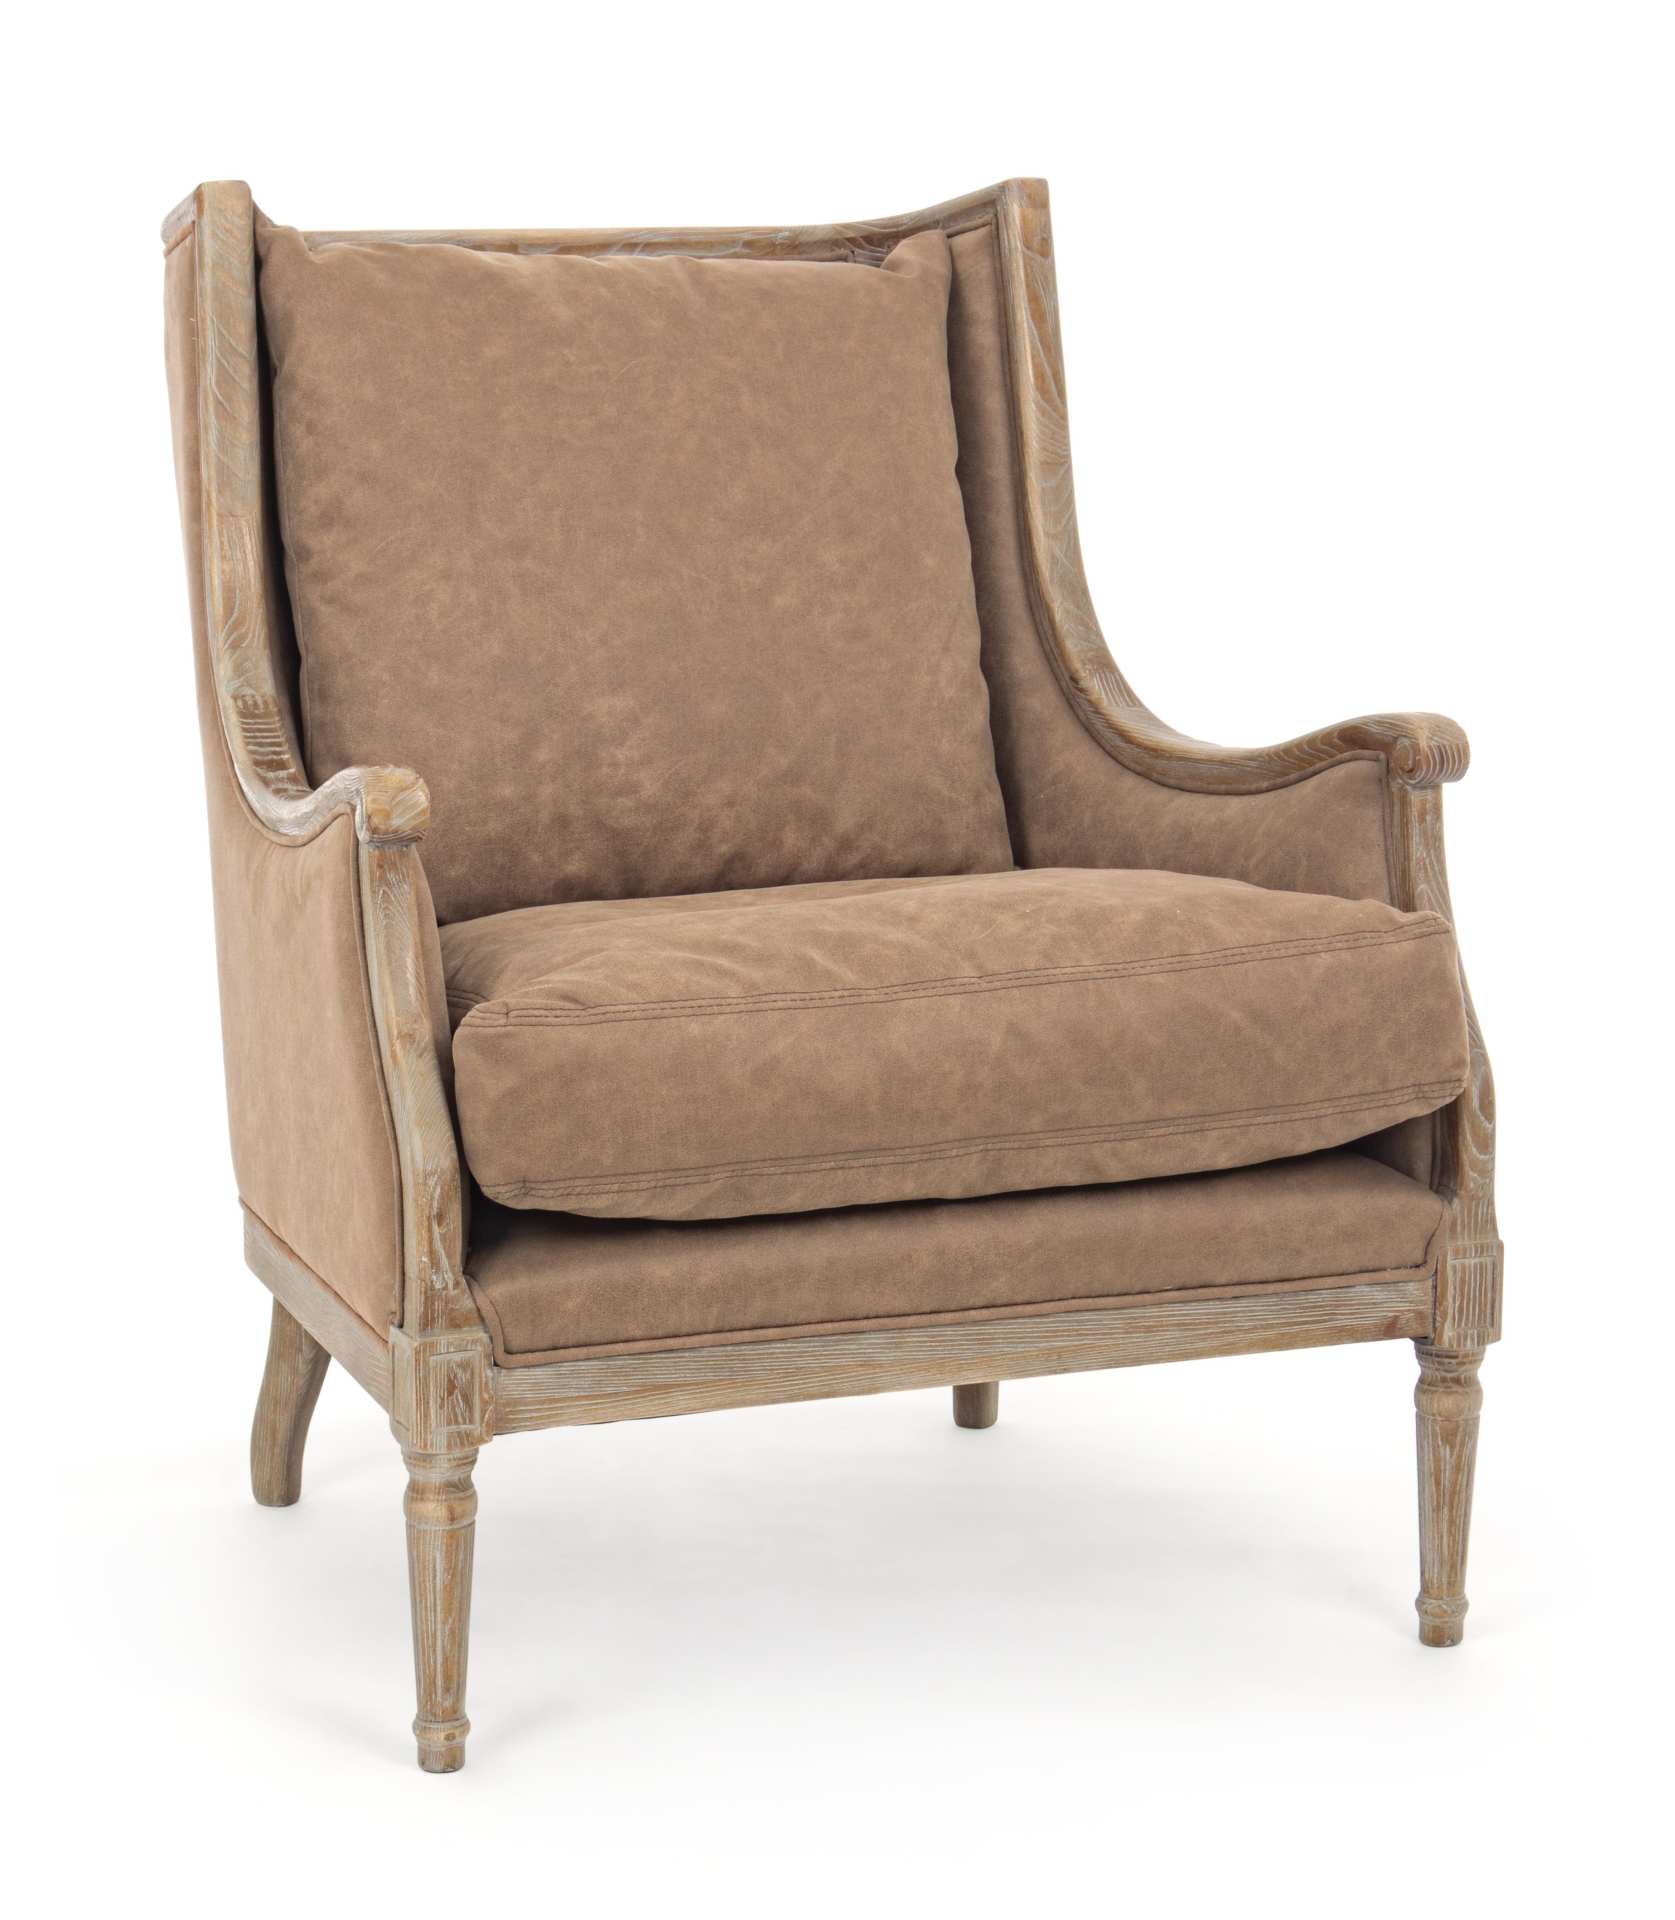 Der Sessel Catherina überzeugt mit seinem klassischen Design. Gefertigt wurde er aus Stoff, welcher einen braunen Farbton besitzt. Das Gestell ist aus Eschenholz und hat eine natürliche Farbe. Der Sessel besitzt eine Sitzhöhe von 48 cm. Die Breite beträgt